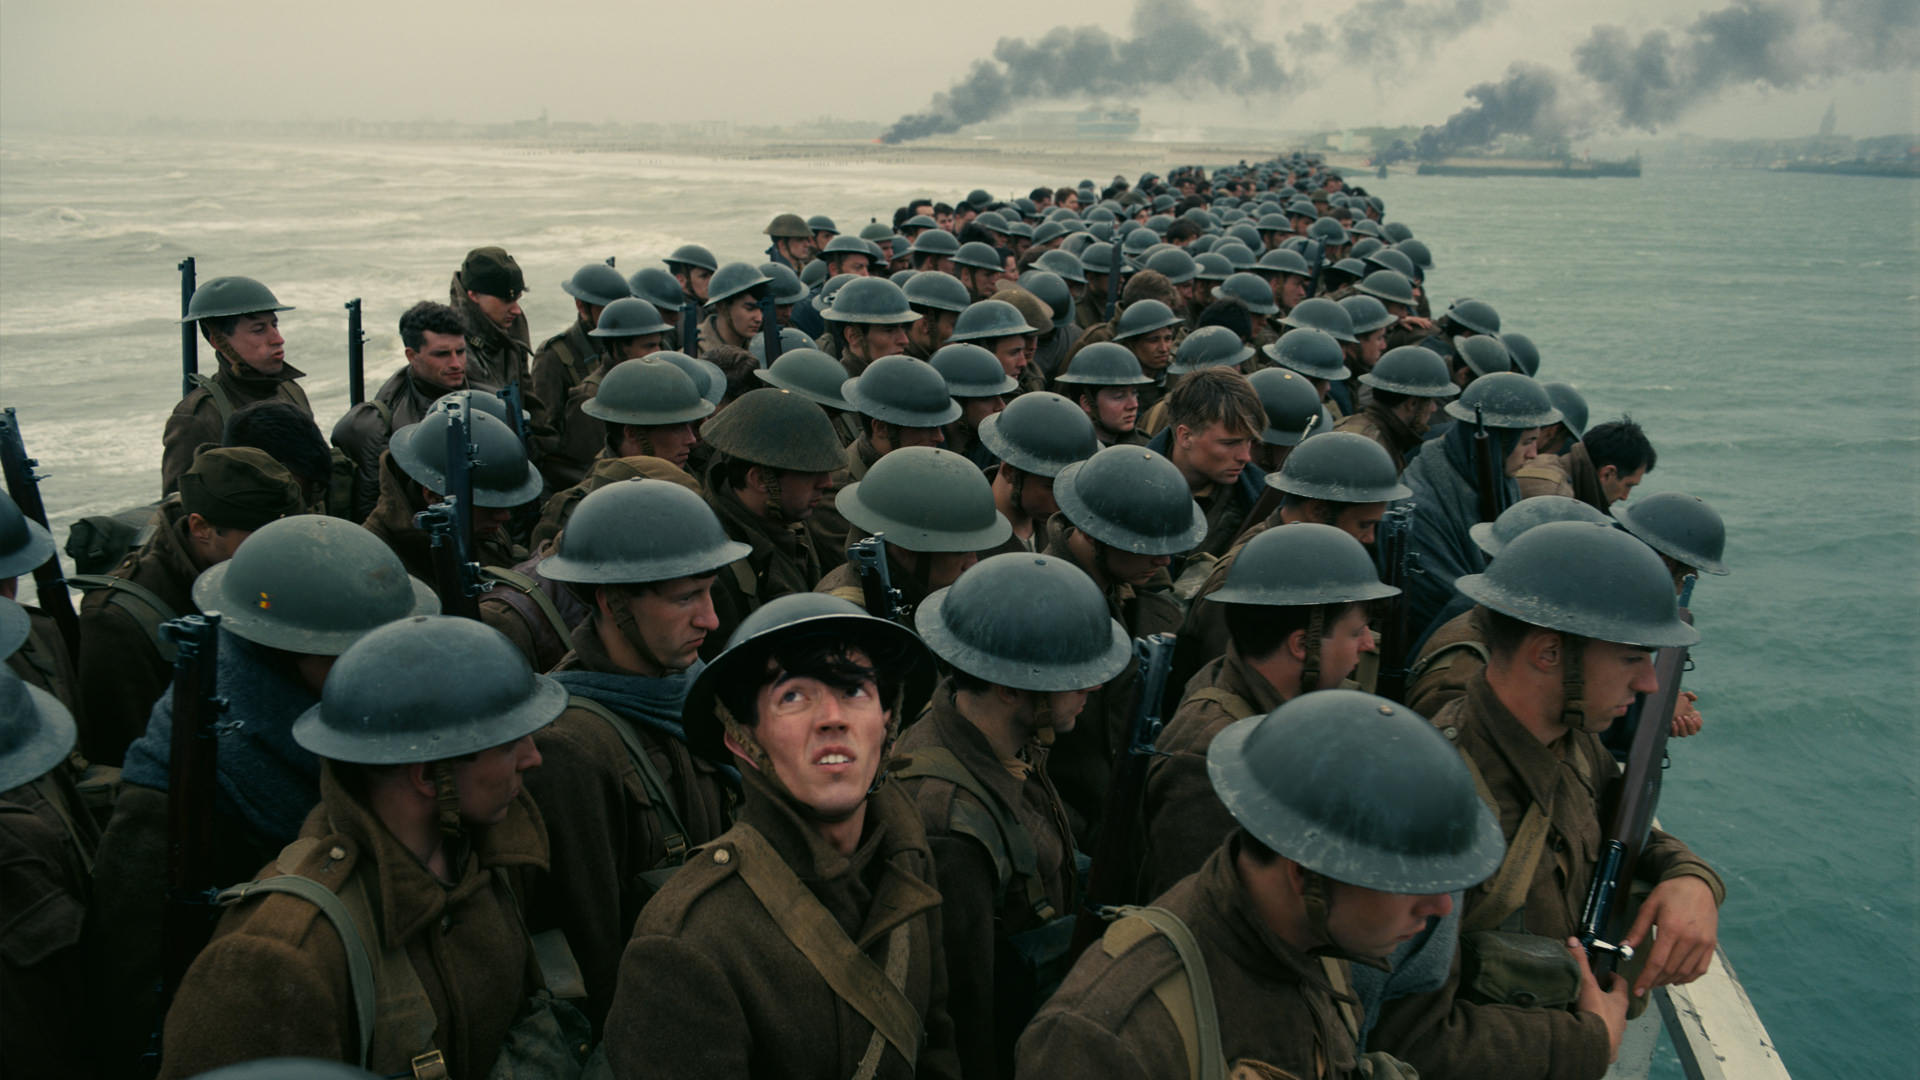 سربازان در ساحل، فیلم دانکرک